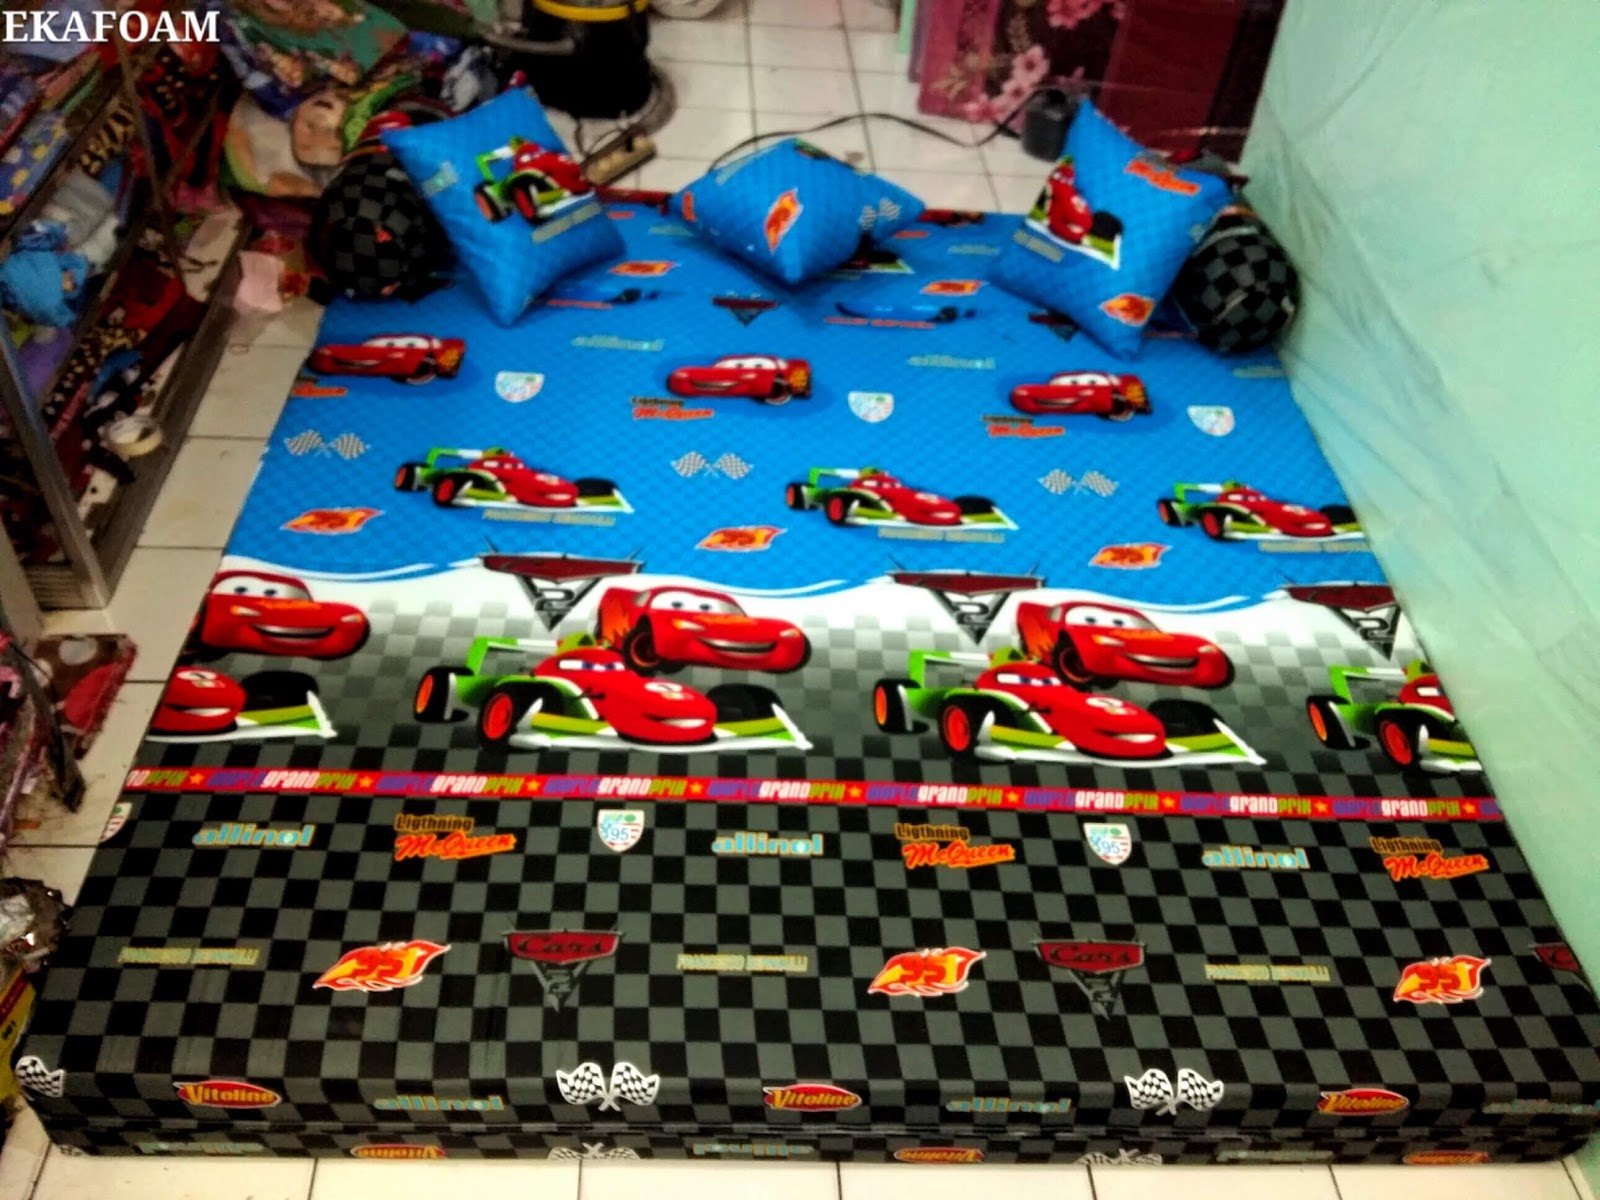 SOFA BED INOAC 2016 Motif THE CAR Biru Agen Kasur Busa Inoac Tangerang